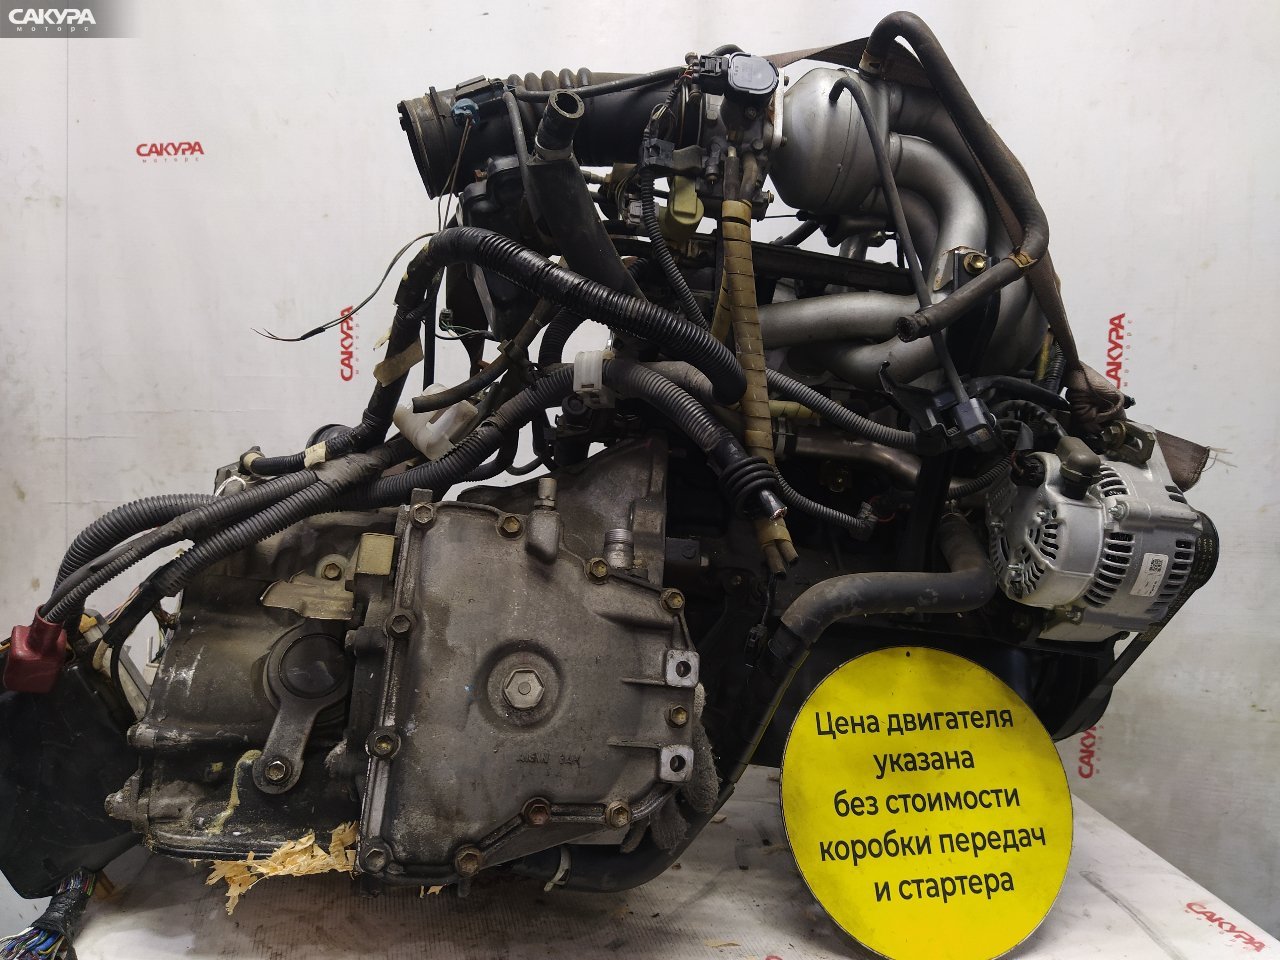 Двигатель Toyota Starlet EP91 4E-FE: купить в Сакура Красноярск.